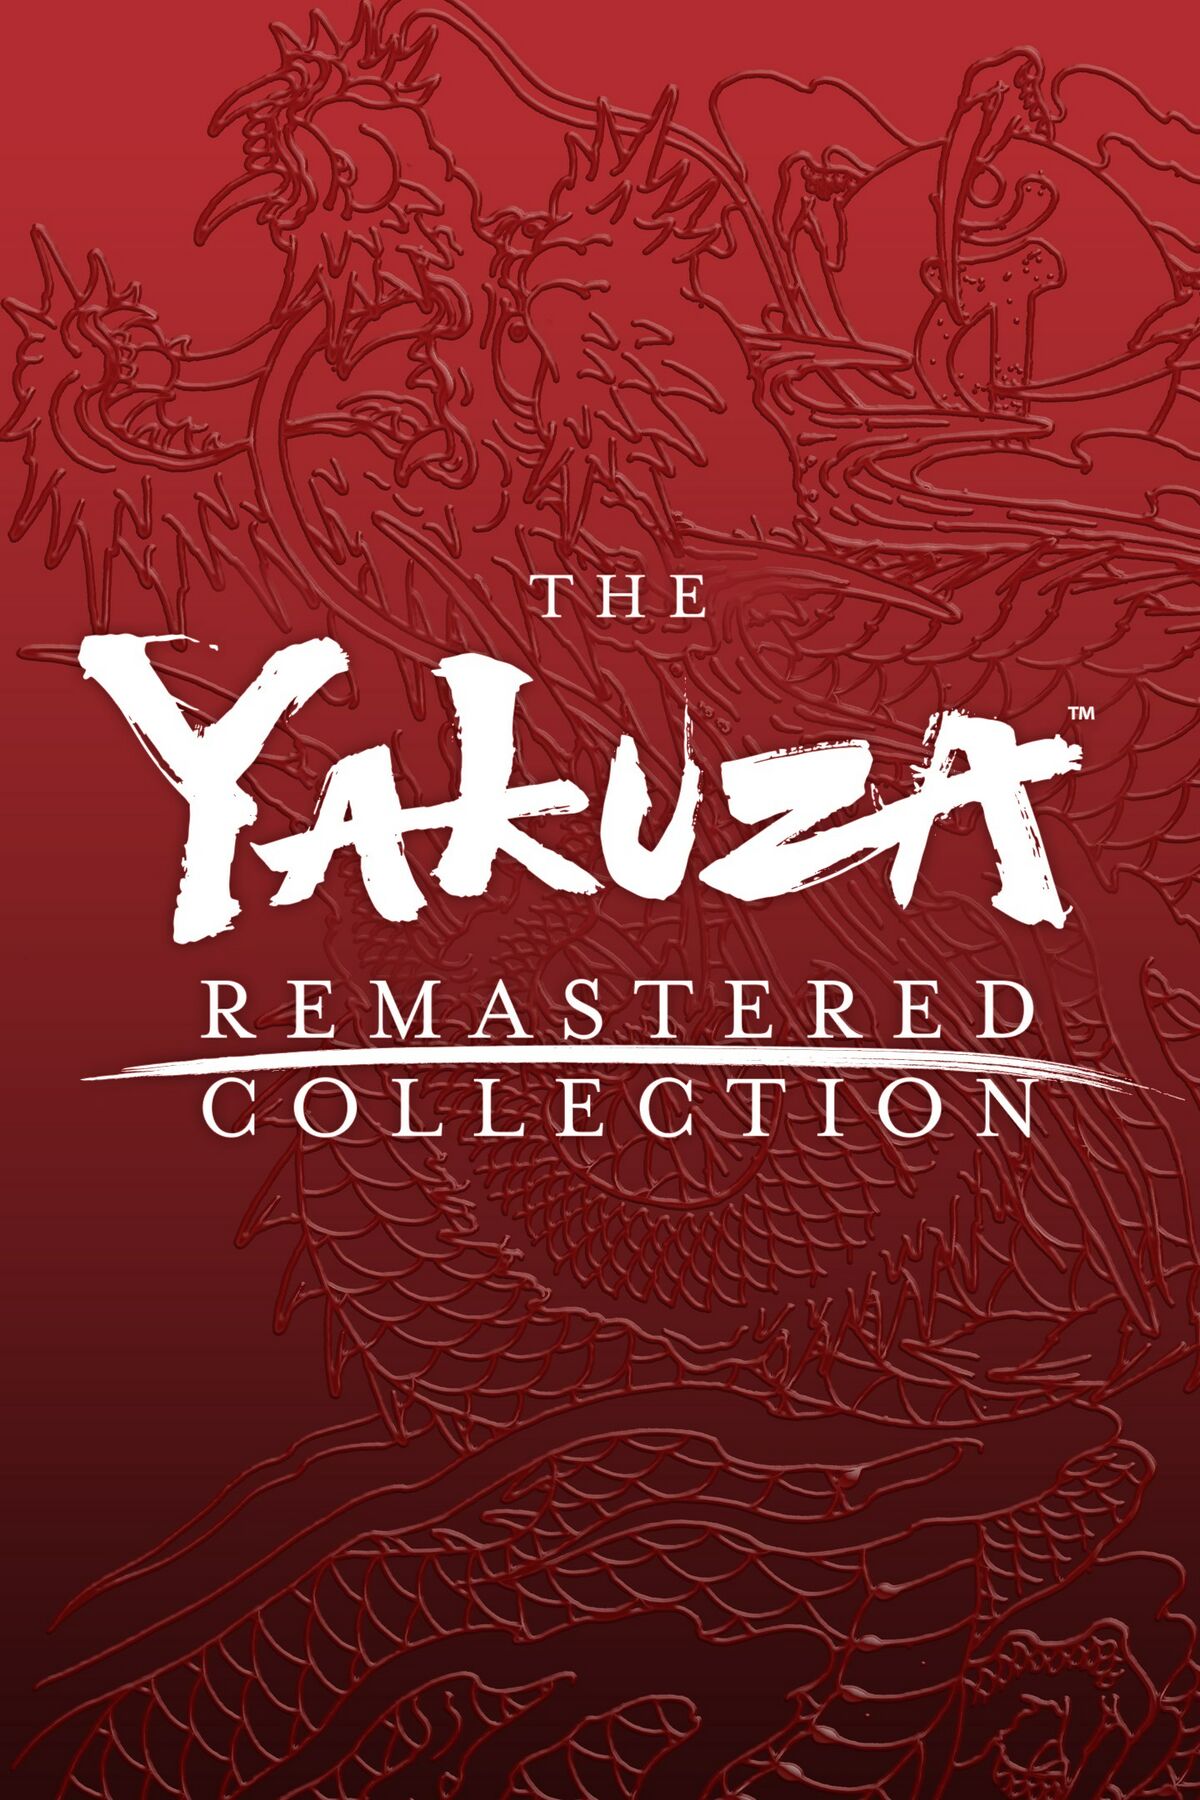 Judgment, Yakuza Wiki